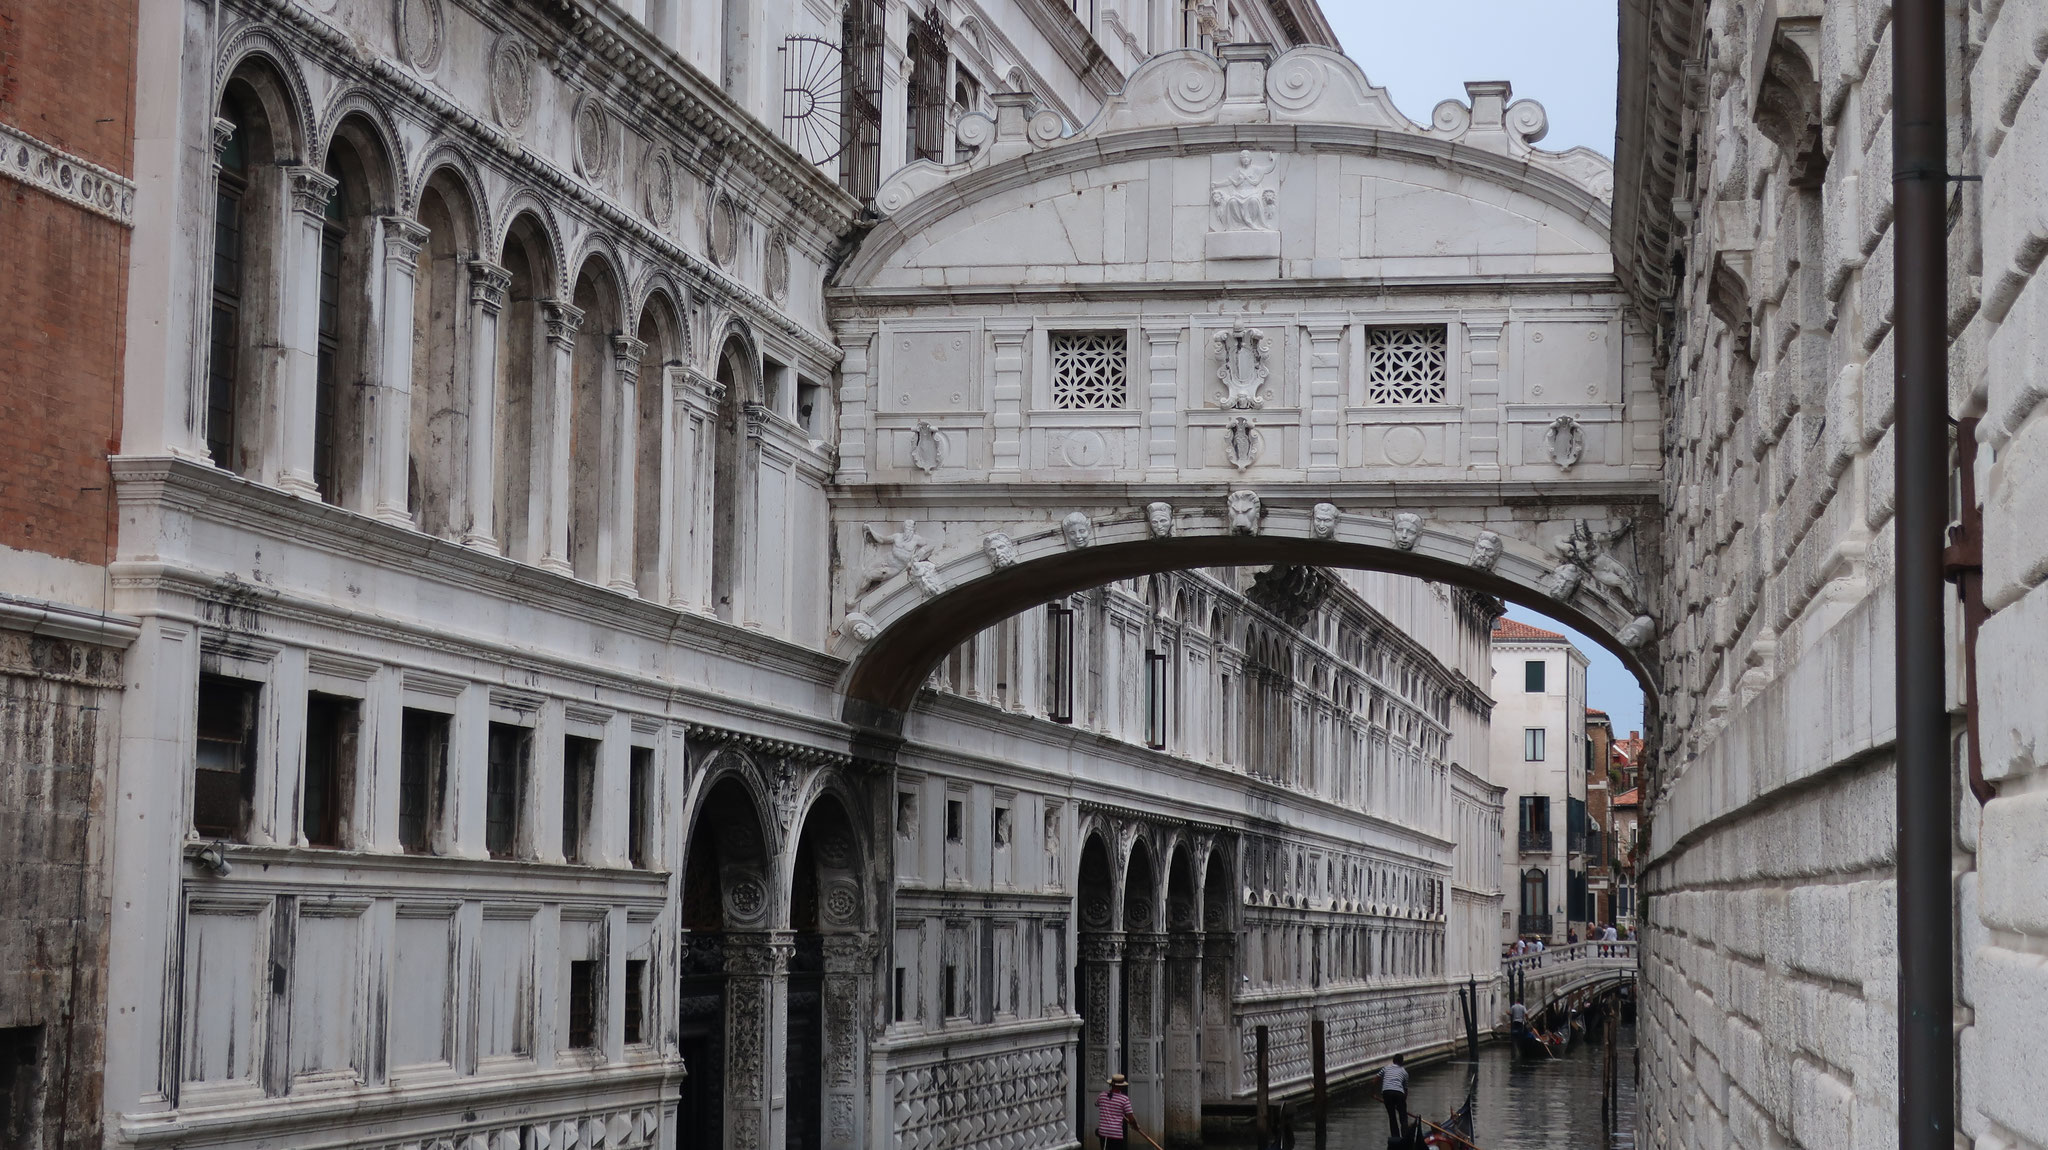 独房に入れられる前に、窓の外のヴェネツィアの景色を見られるのは最後だから囚人がため息をついたので「溜息の橋」と呼ばれます。